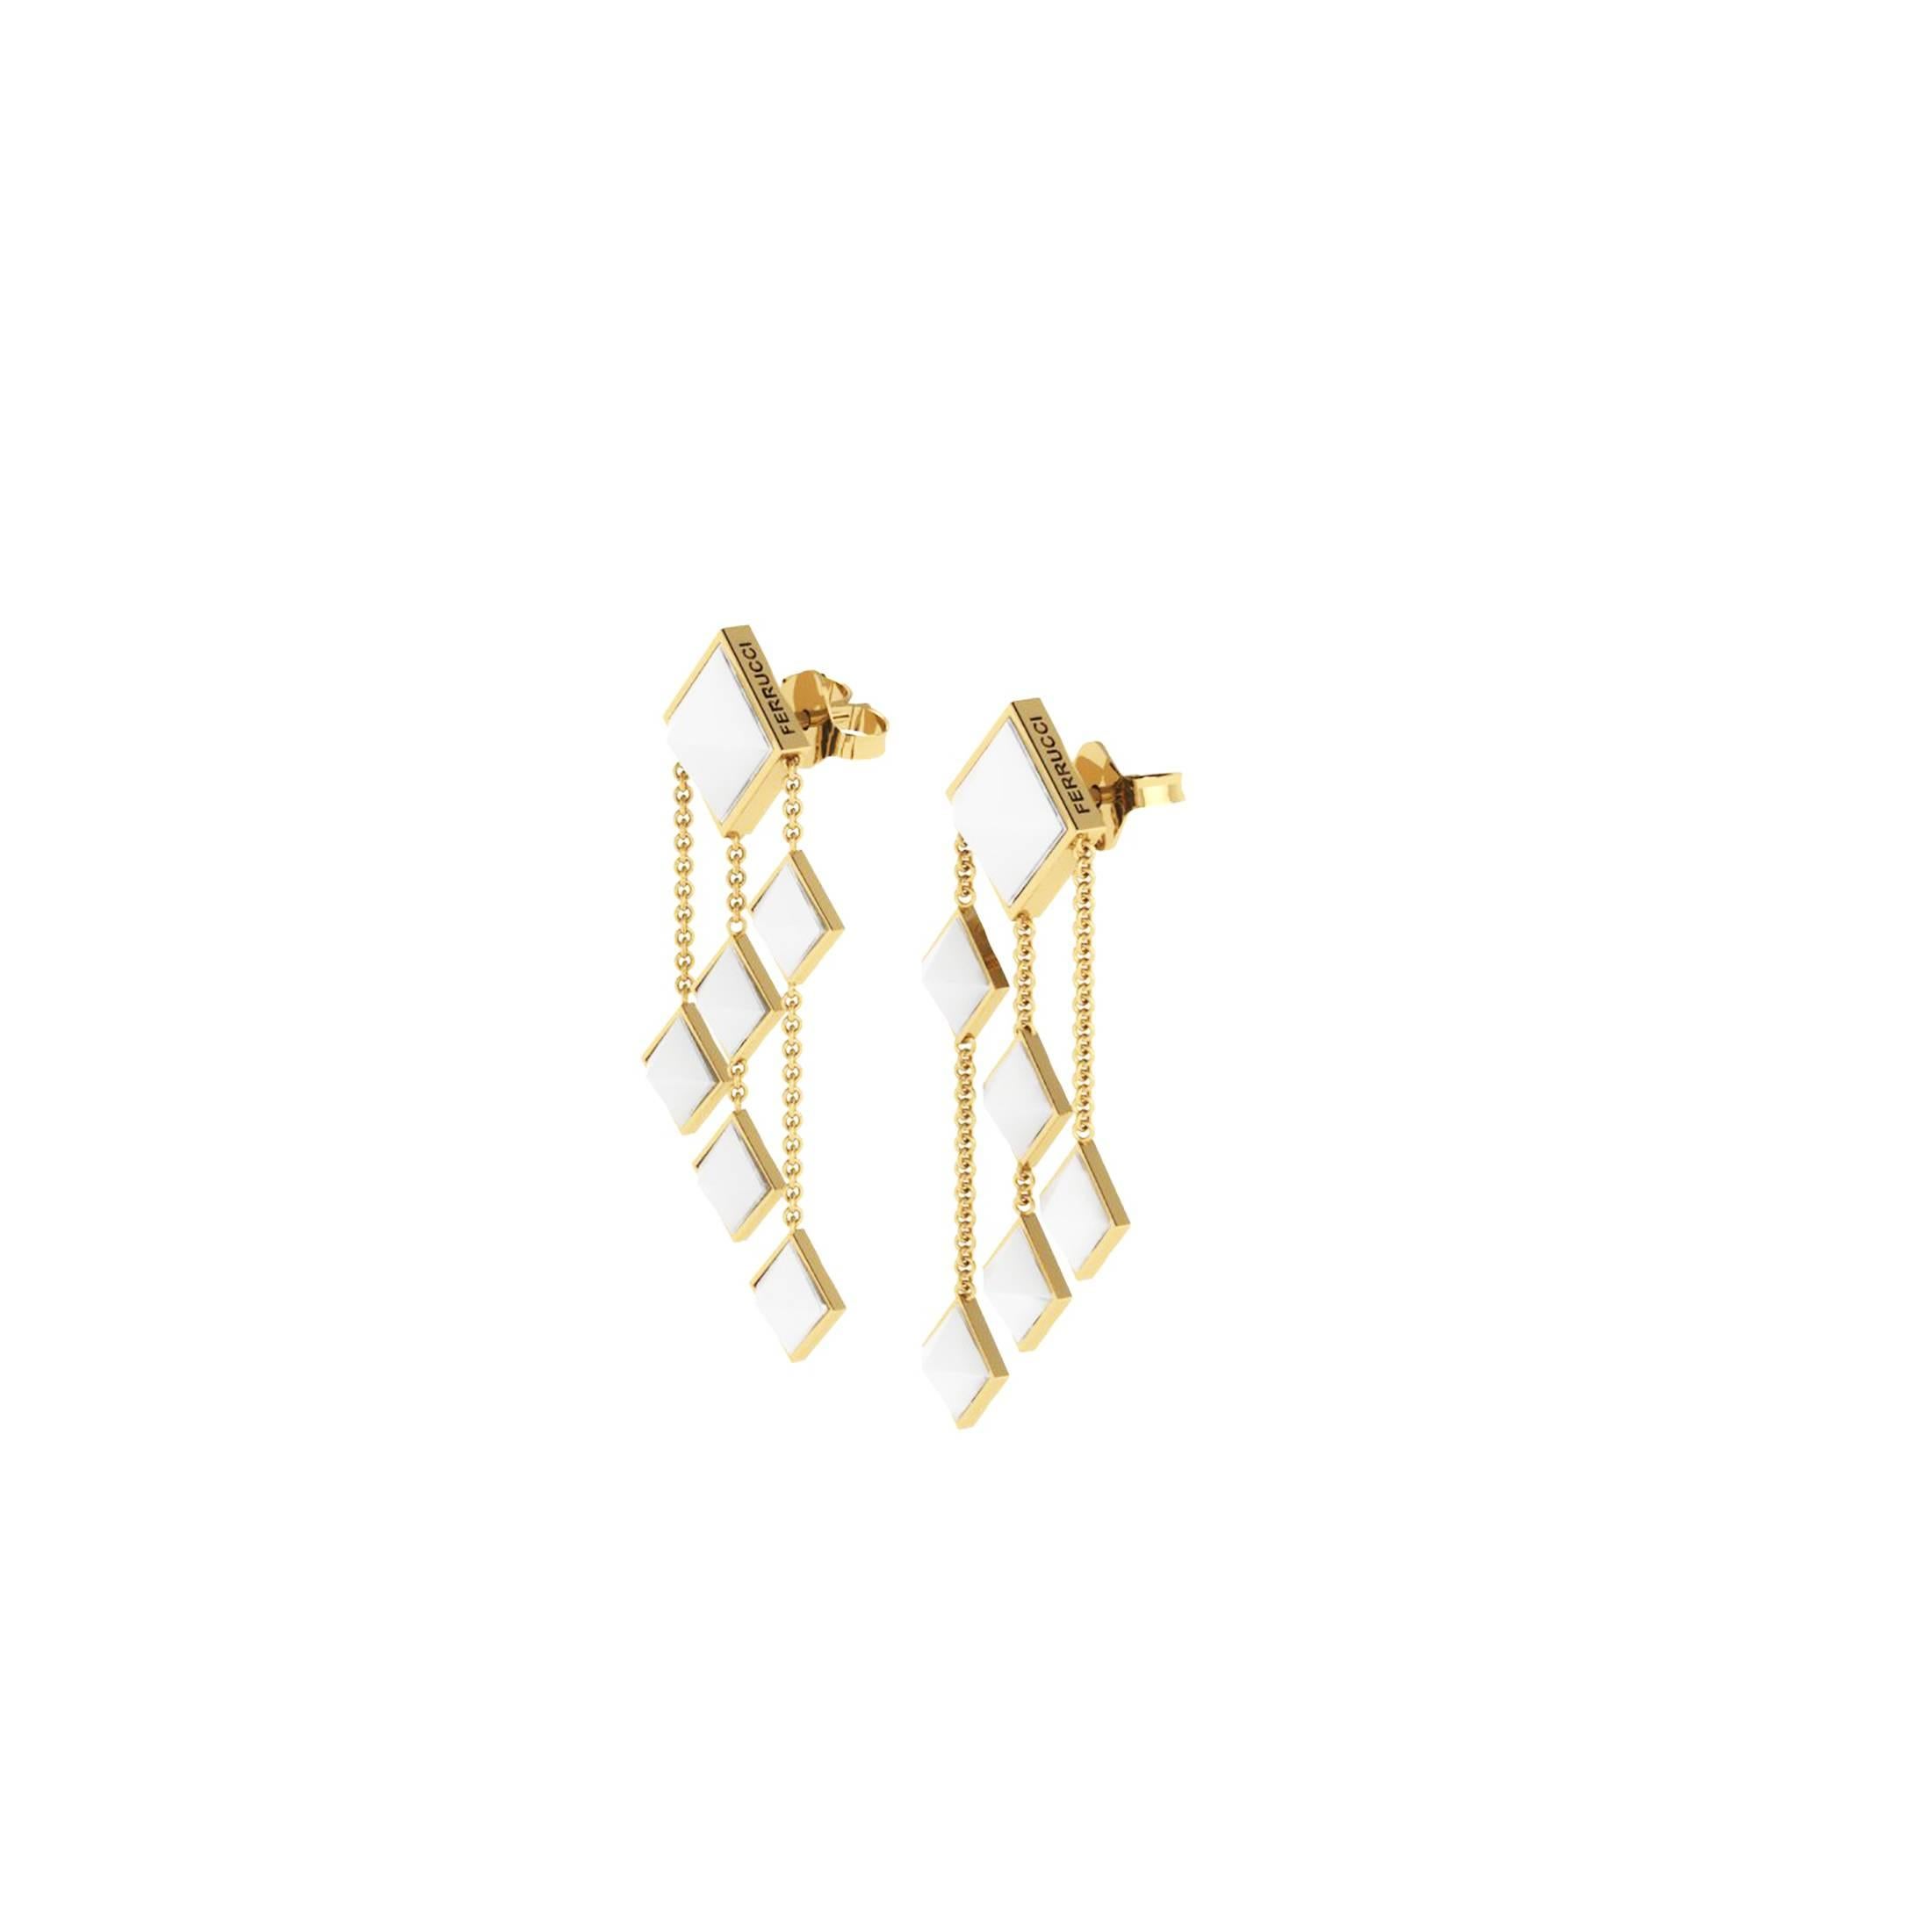 Von FERRUCCI Pyramids Sammlung, diese weißen Achat geschnitten, in 18k Gelbgold baumelnden Ohrringe, handgefertigt in New York City von italienischen Meister Juwelier Francesco Ferrucci, ein Art Deco inspirieren Design, elegant, aber leicht für